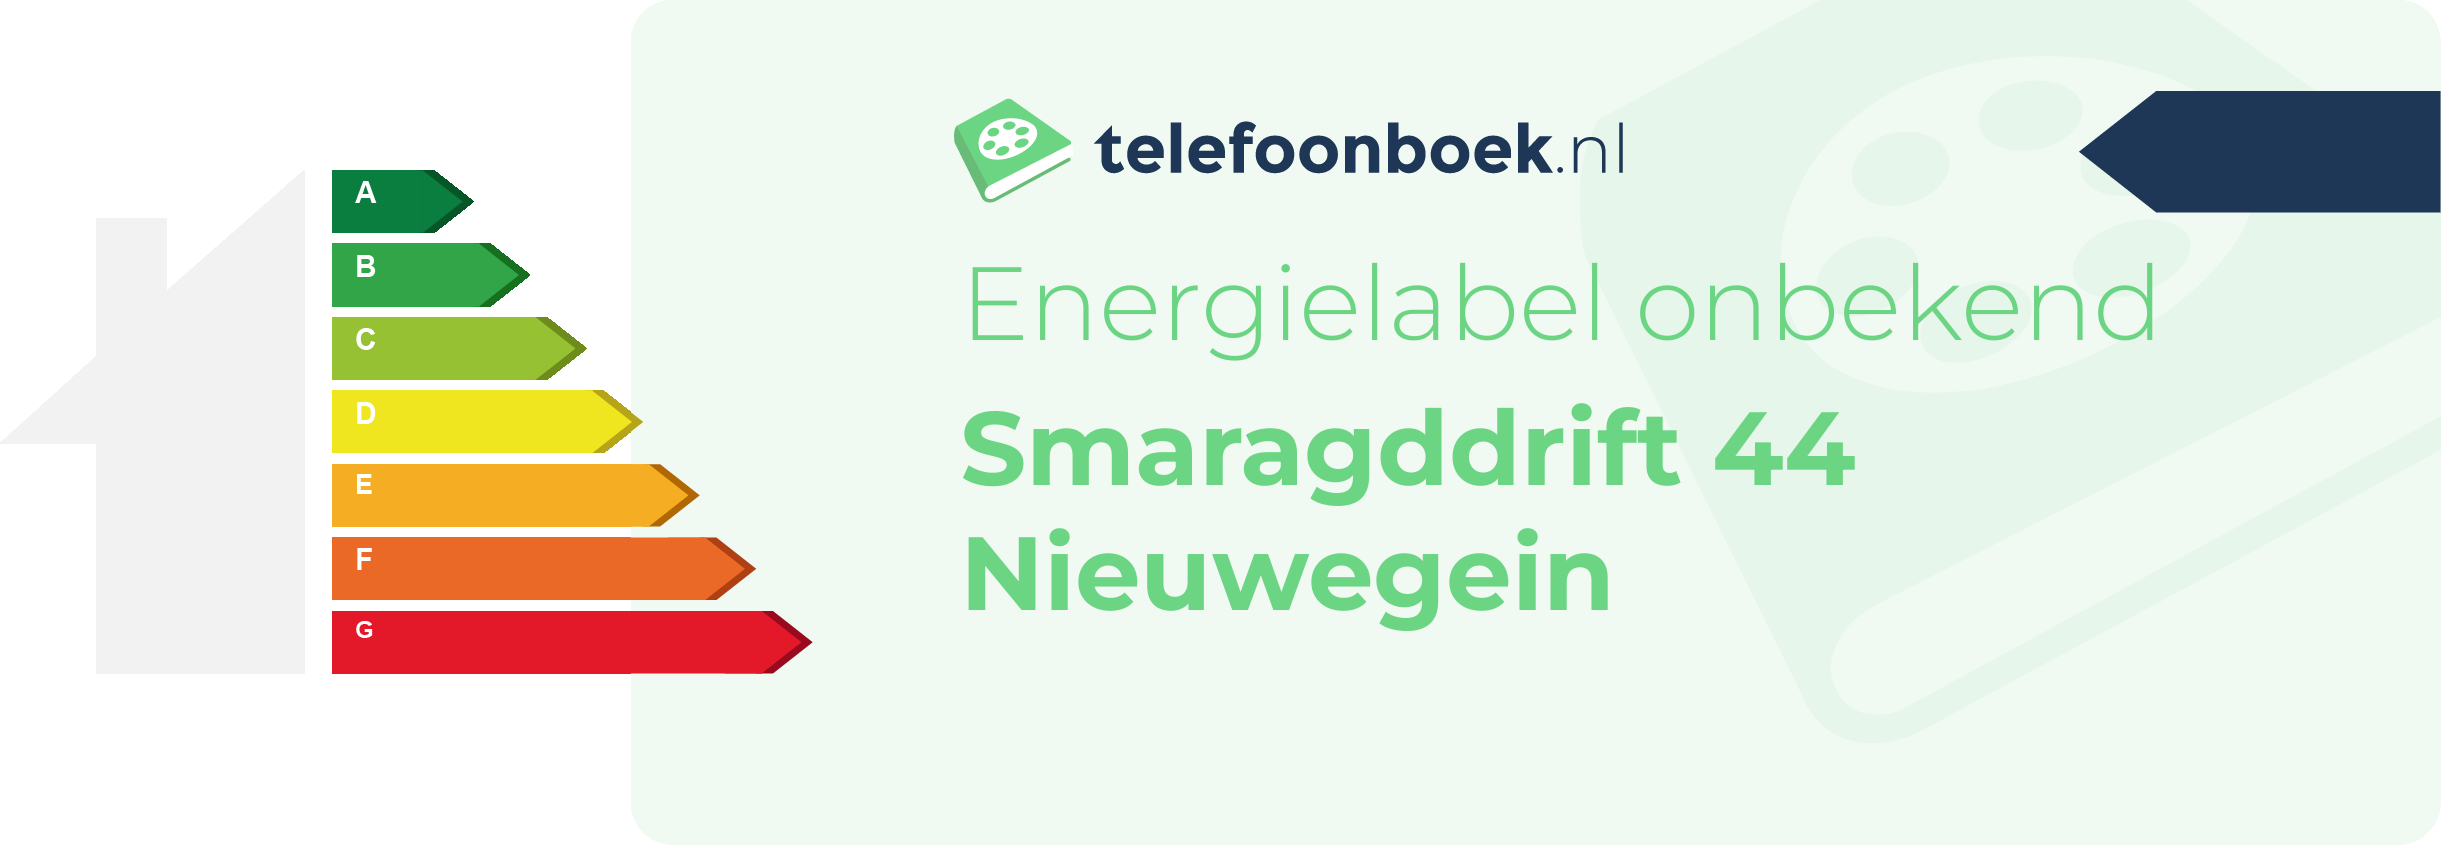 Energielabel Smaragddrift 44 Nieuwegein